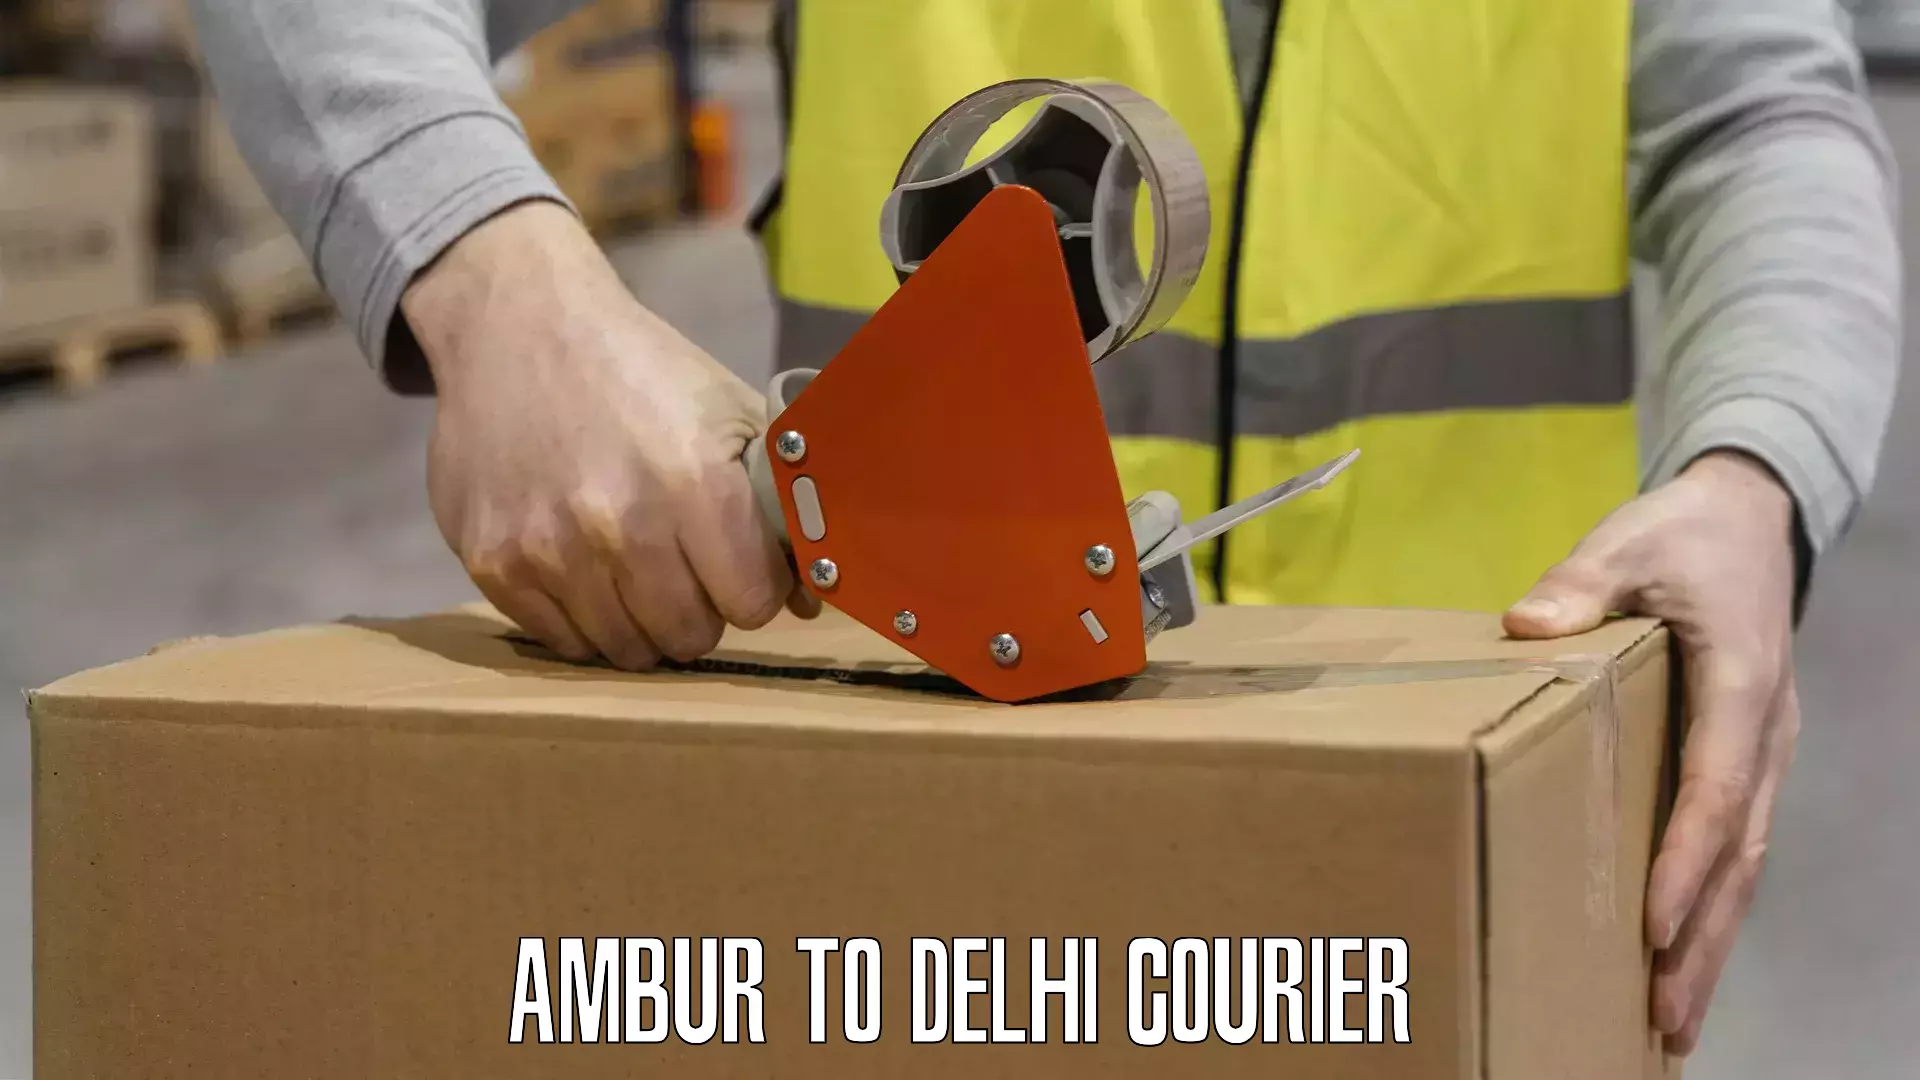 Express delivery solutions Ambur to Delhi